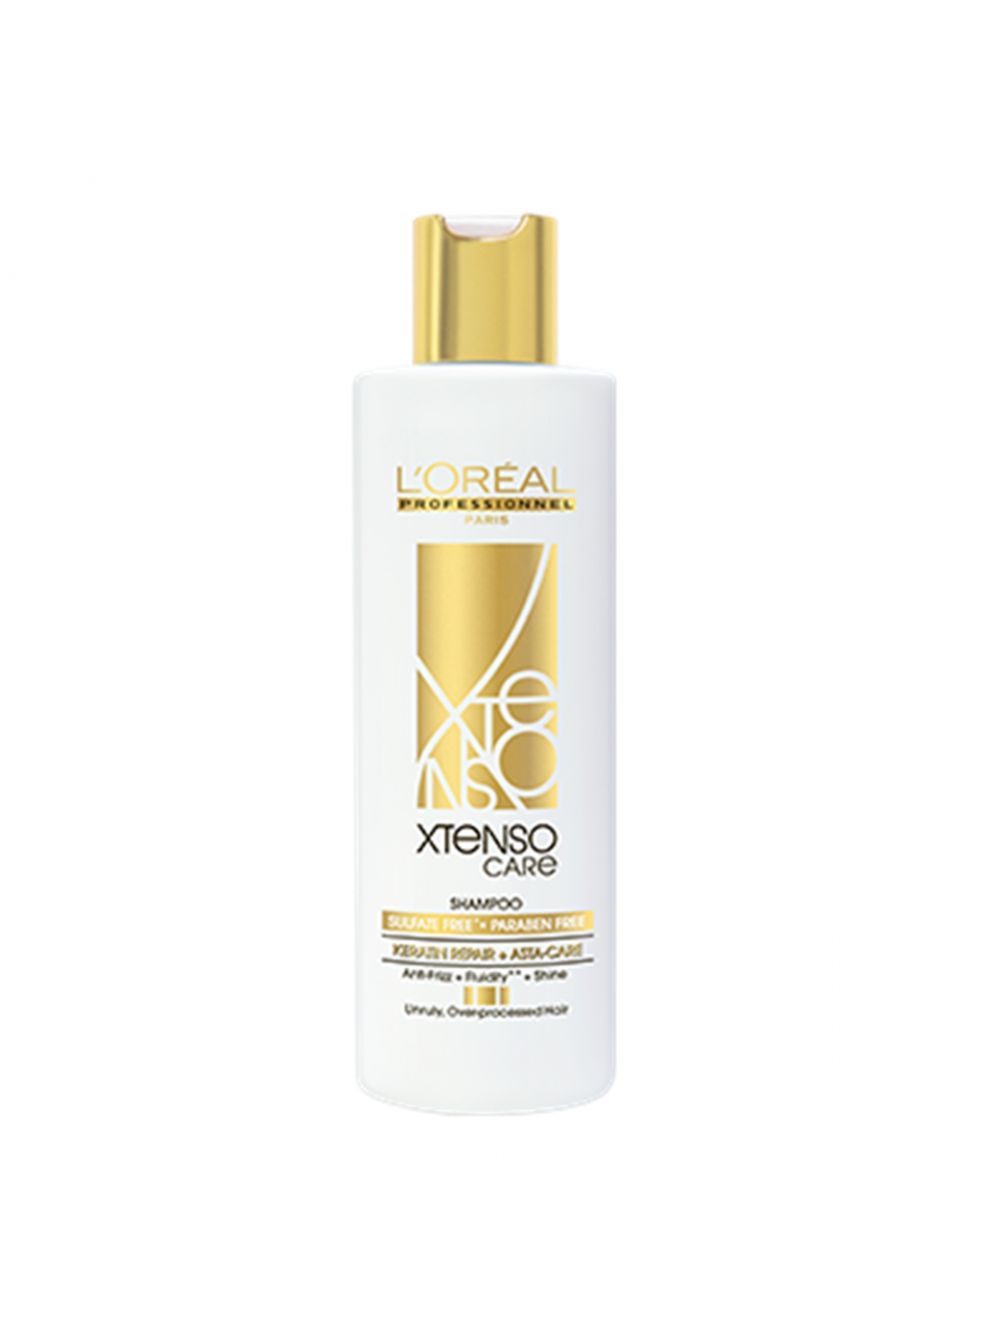 L'Oreal Professionnel Xtenso Care Sulfate Free Shampoo (250ml)